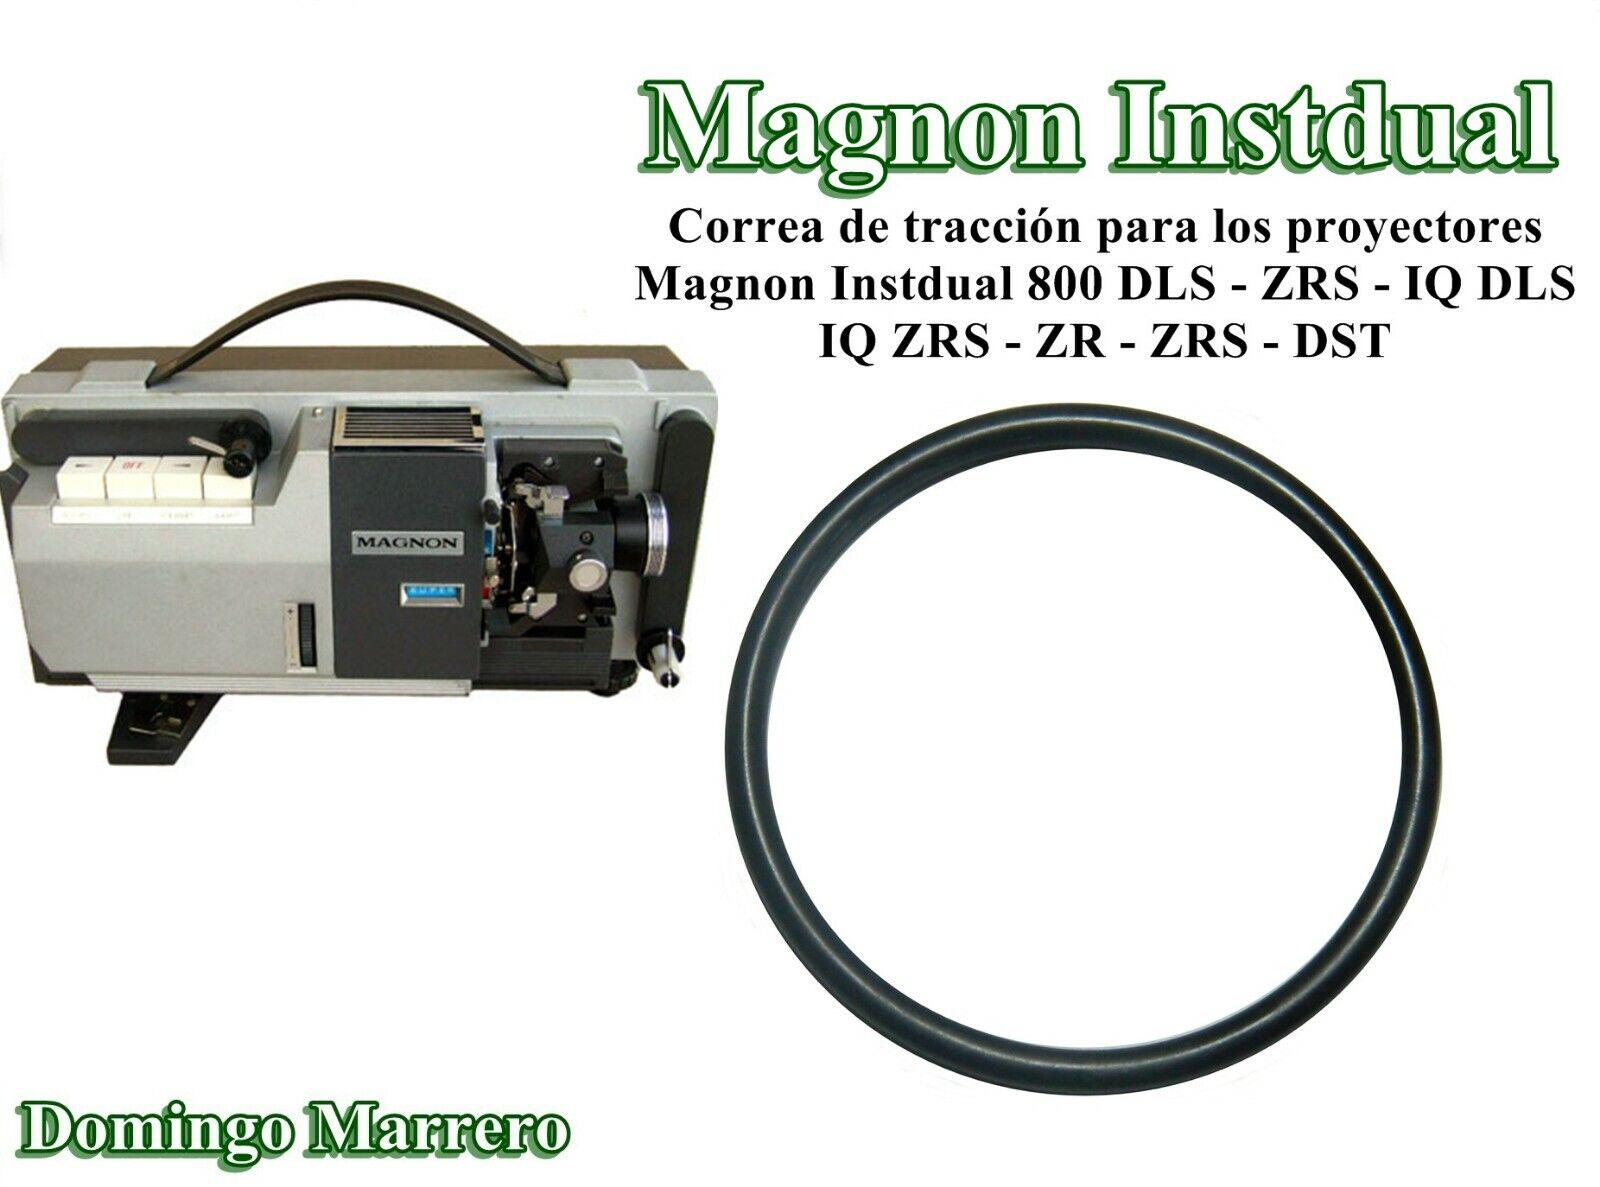 Super 8 Cinema Projector Belt For Magnon Instdual 800